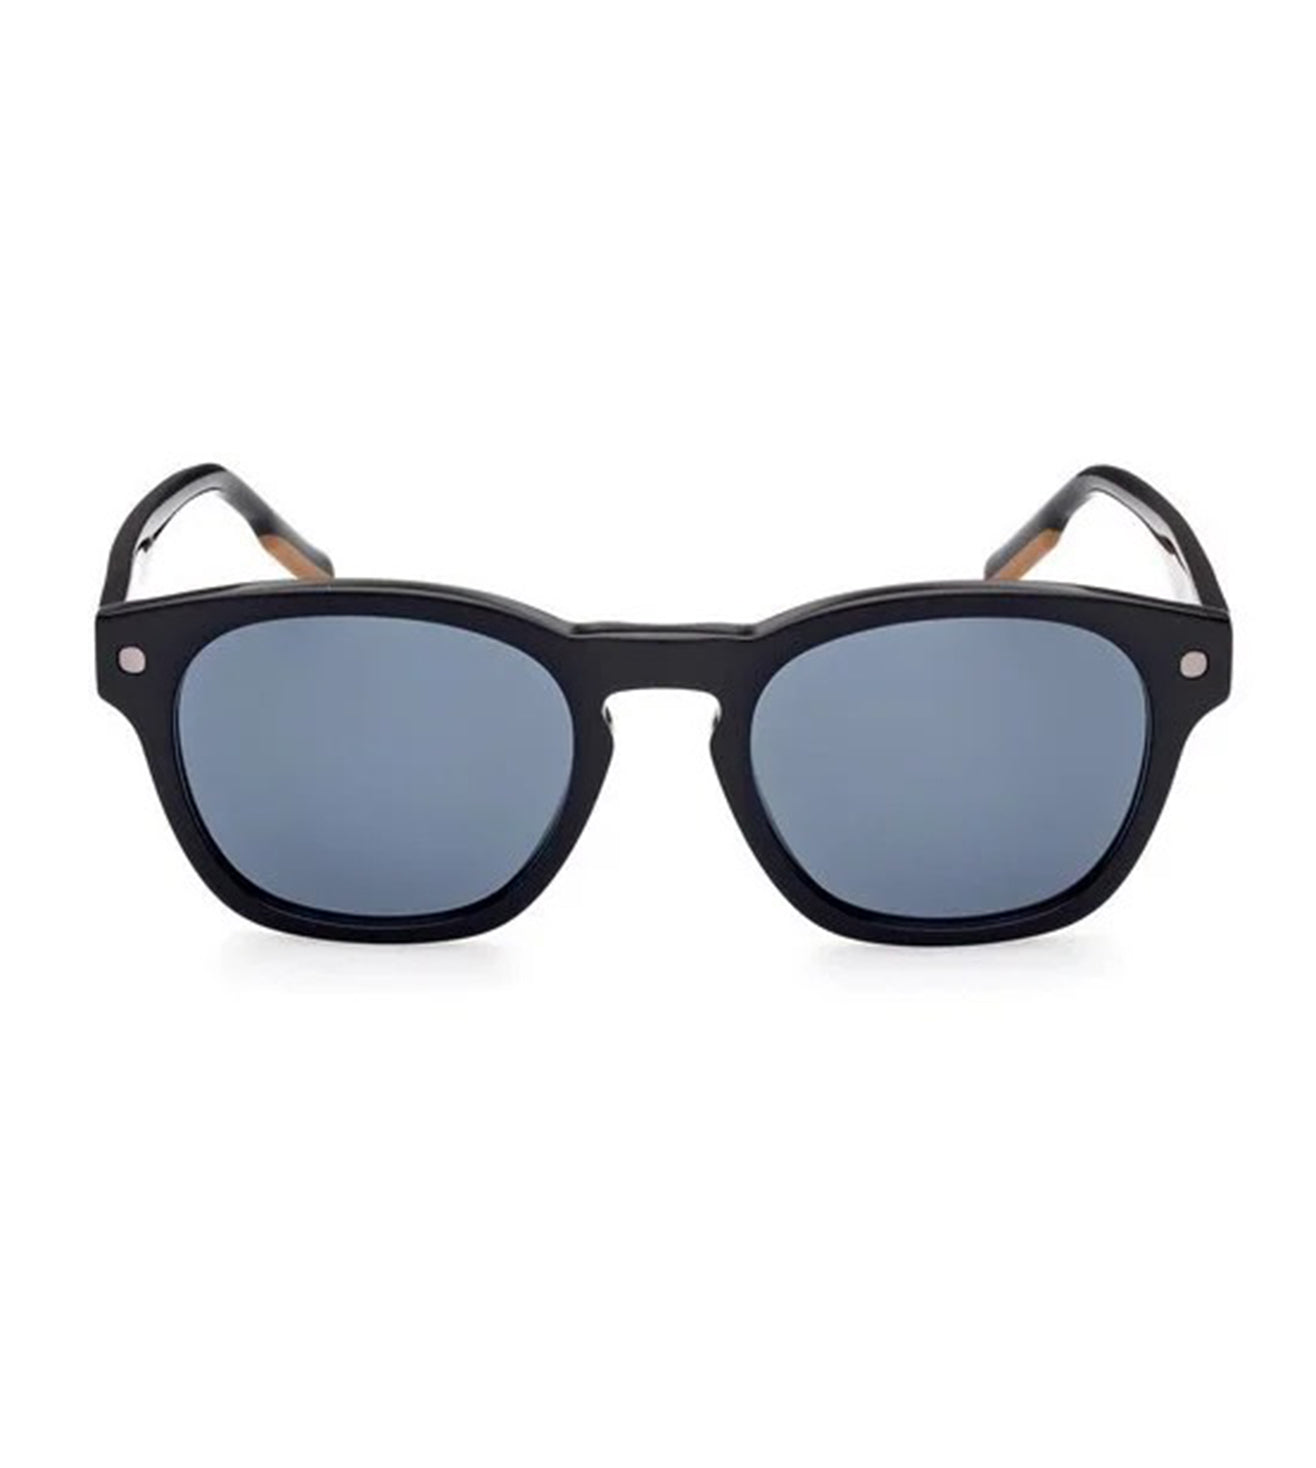 Zegna Men's Blue Round Sunglasses